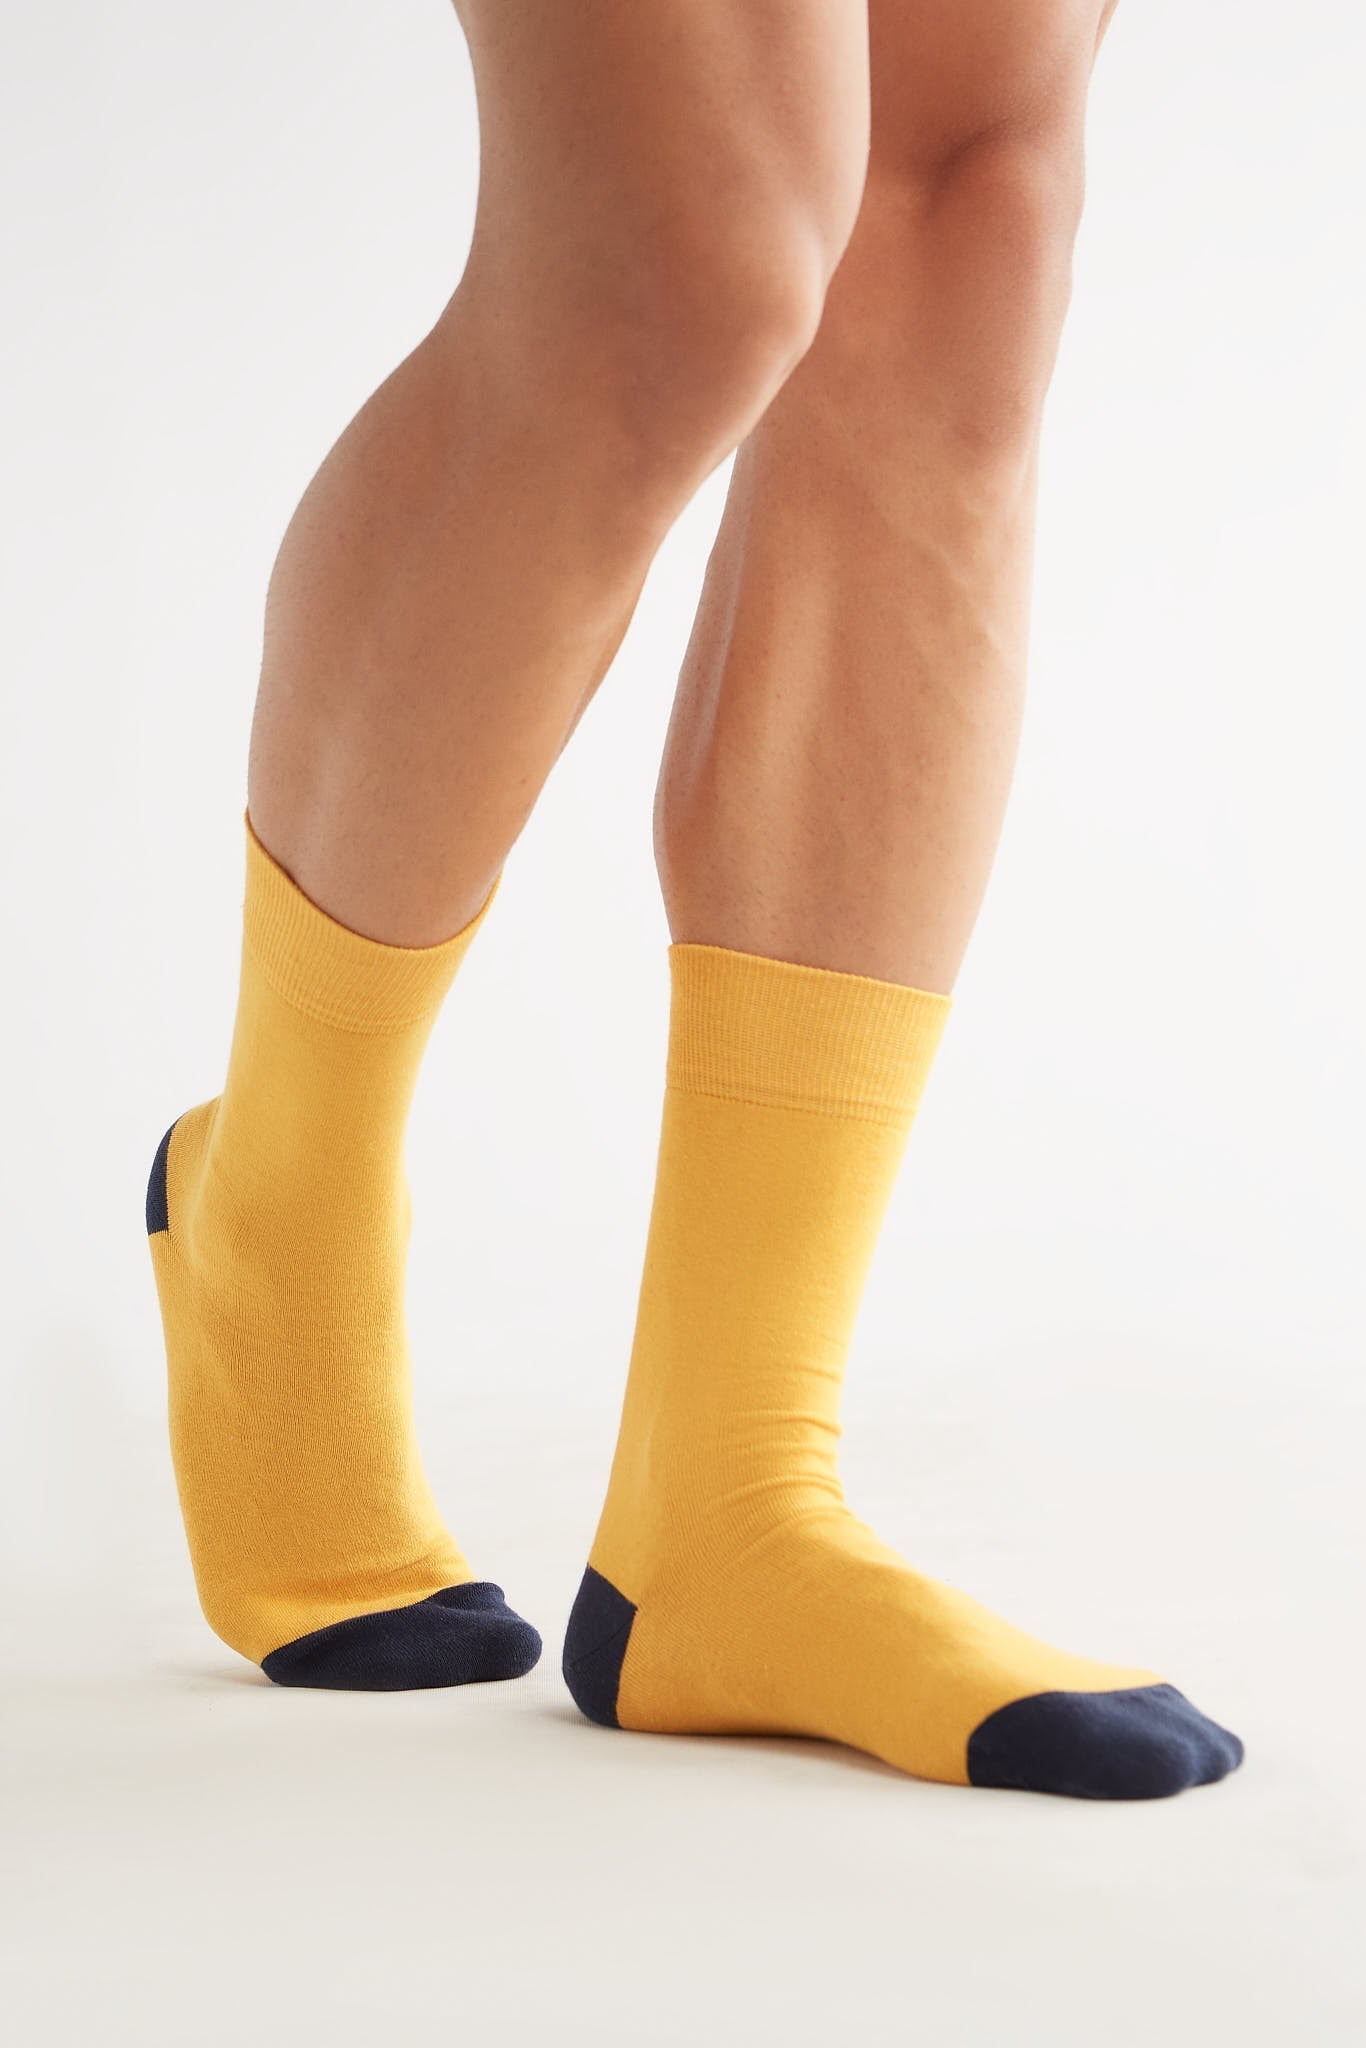 2317 | Stockings, Indigo/Mustard Yellow